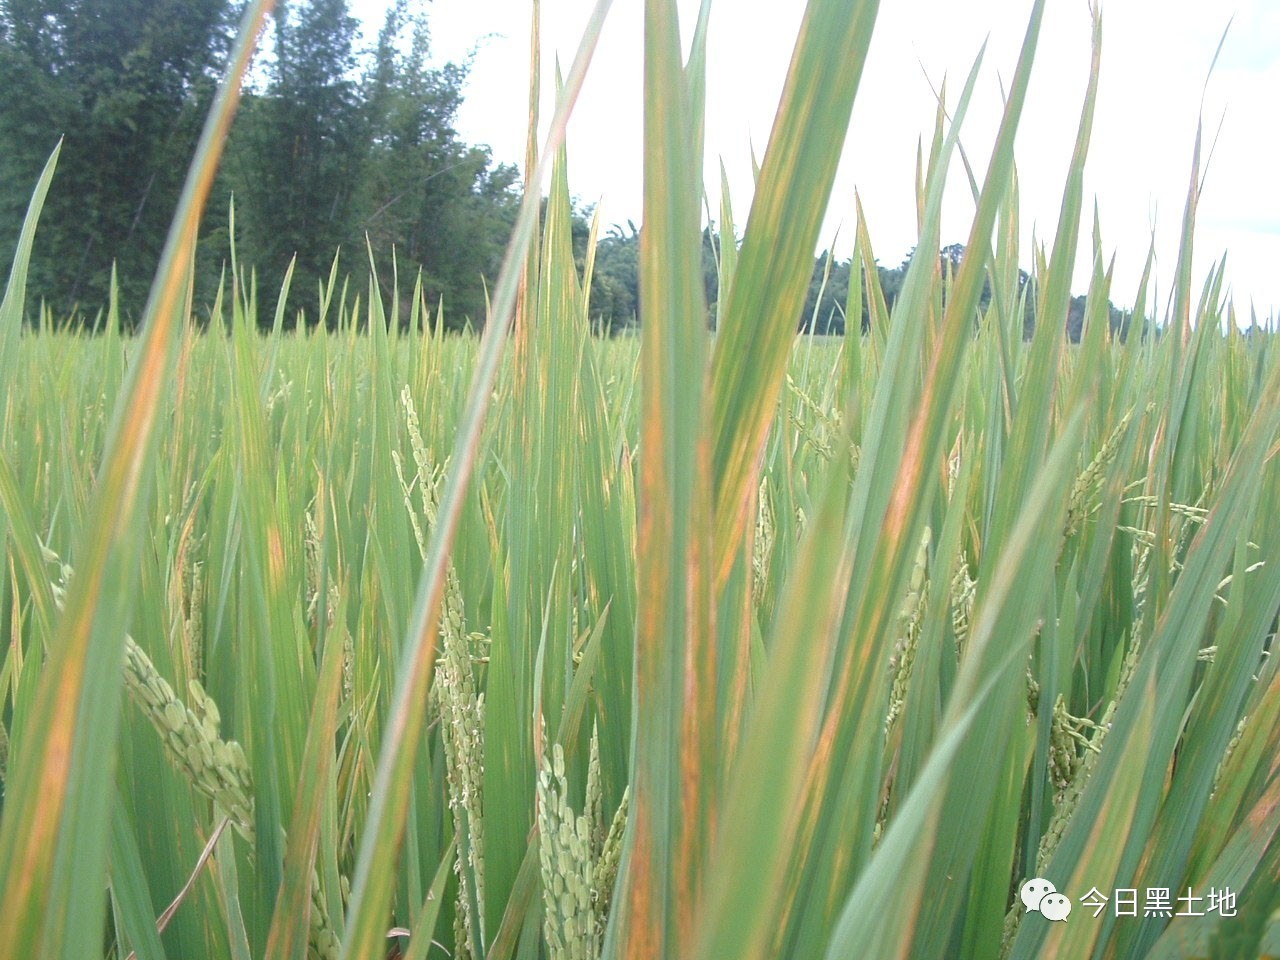 水稻条纹叶枯病是由灰飞虱传播的病毒病,由于是飞虱传毒,所以生产上应